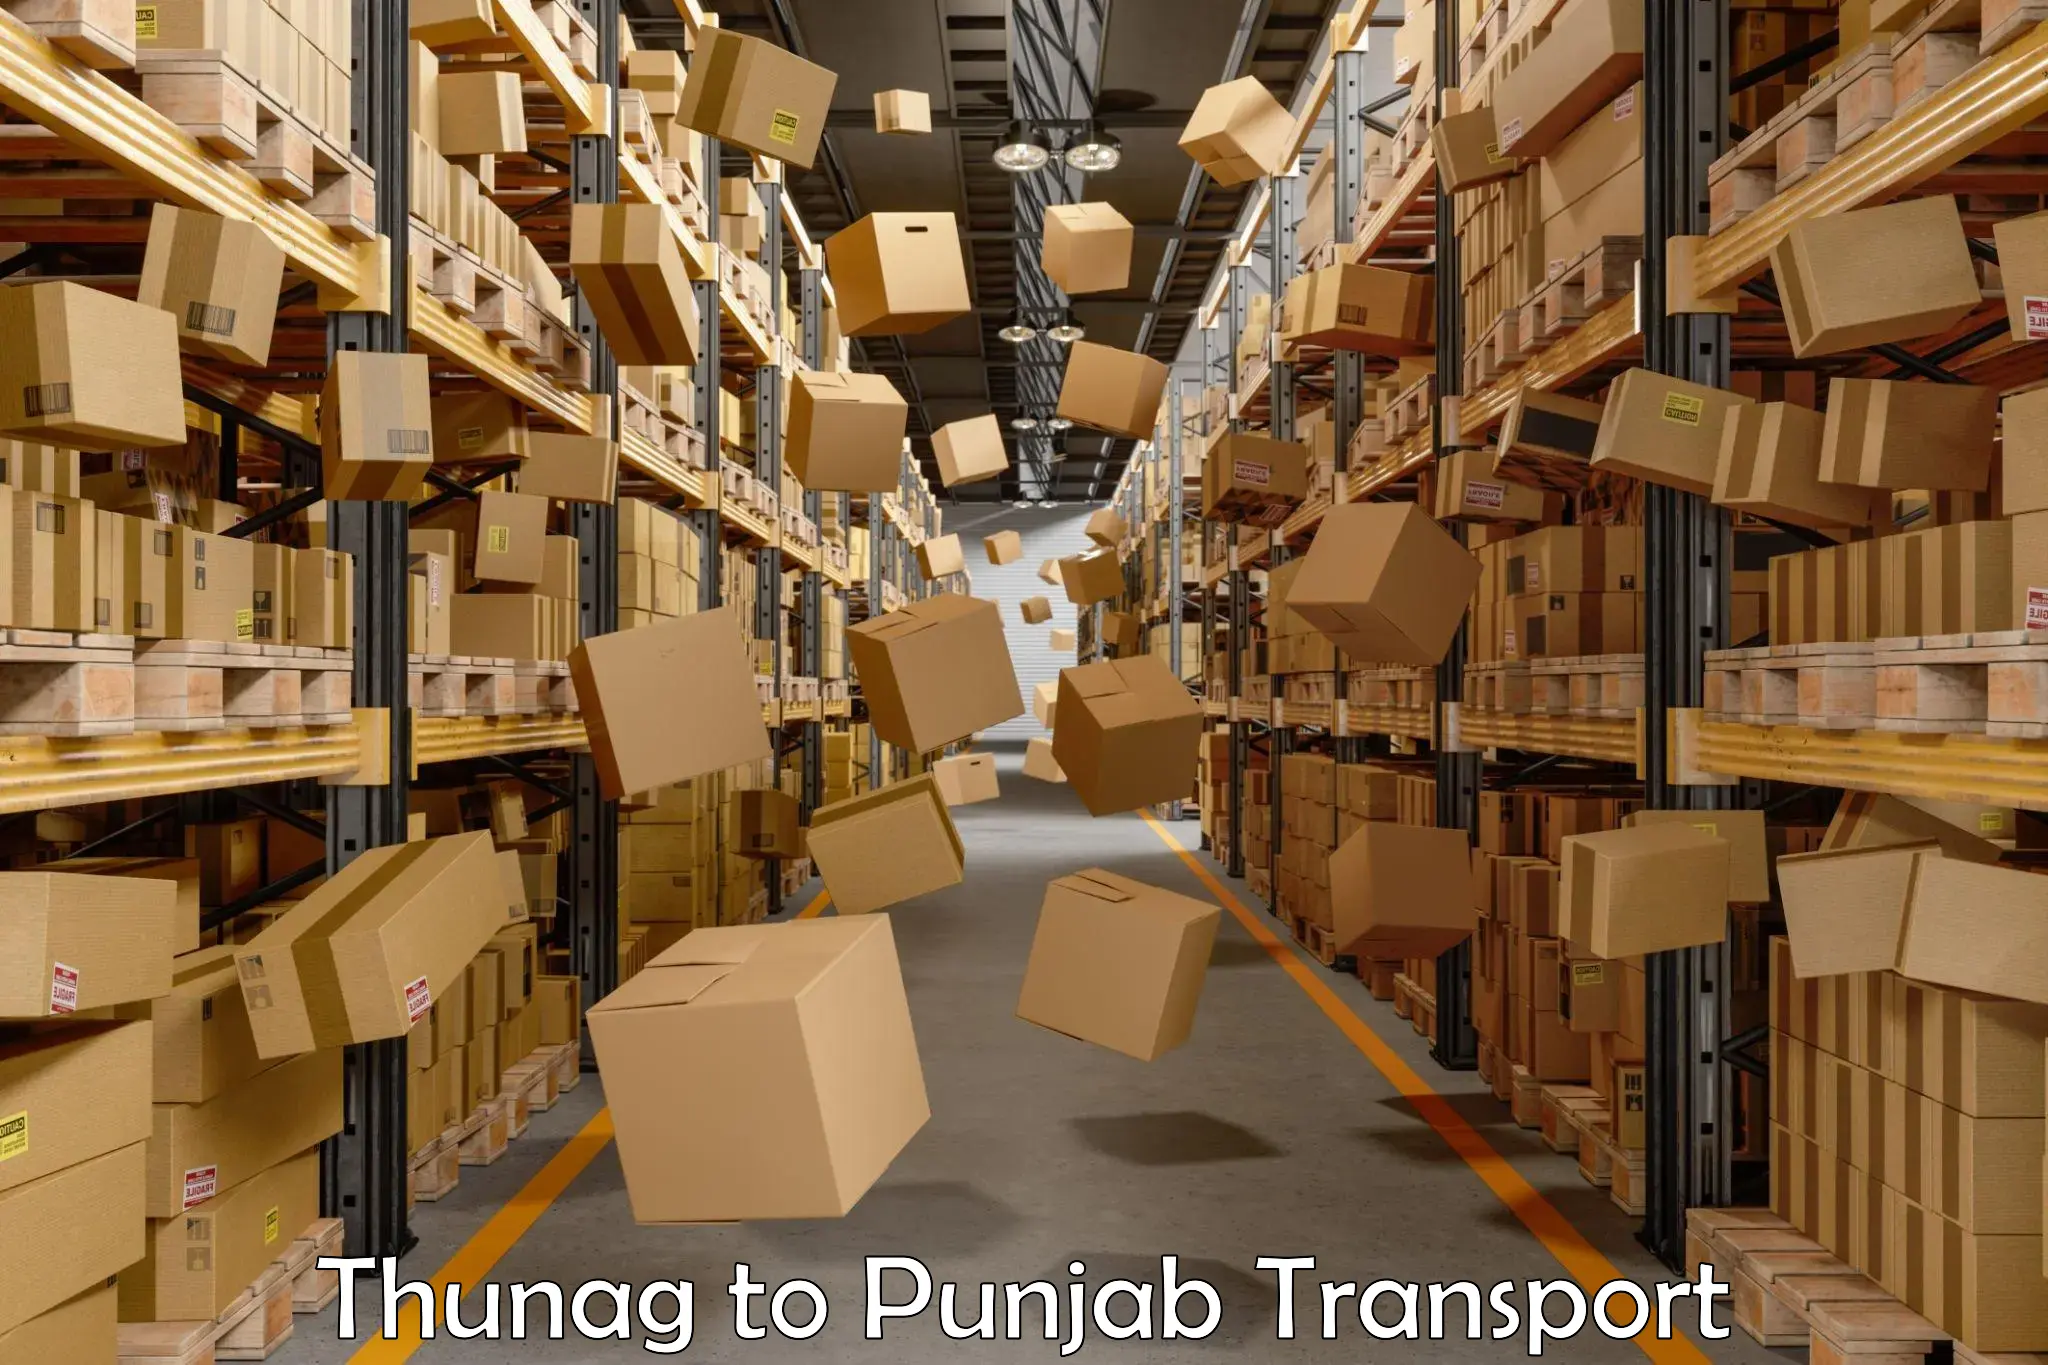 Online transport booking Thunag to Punjab